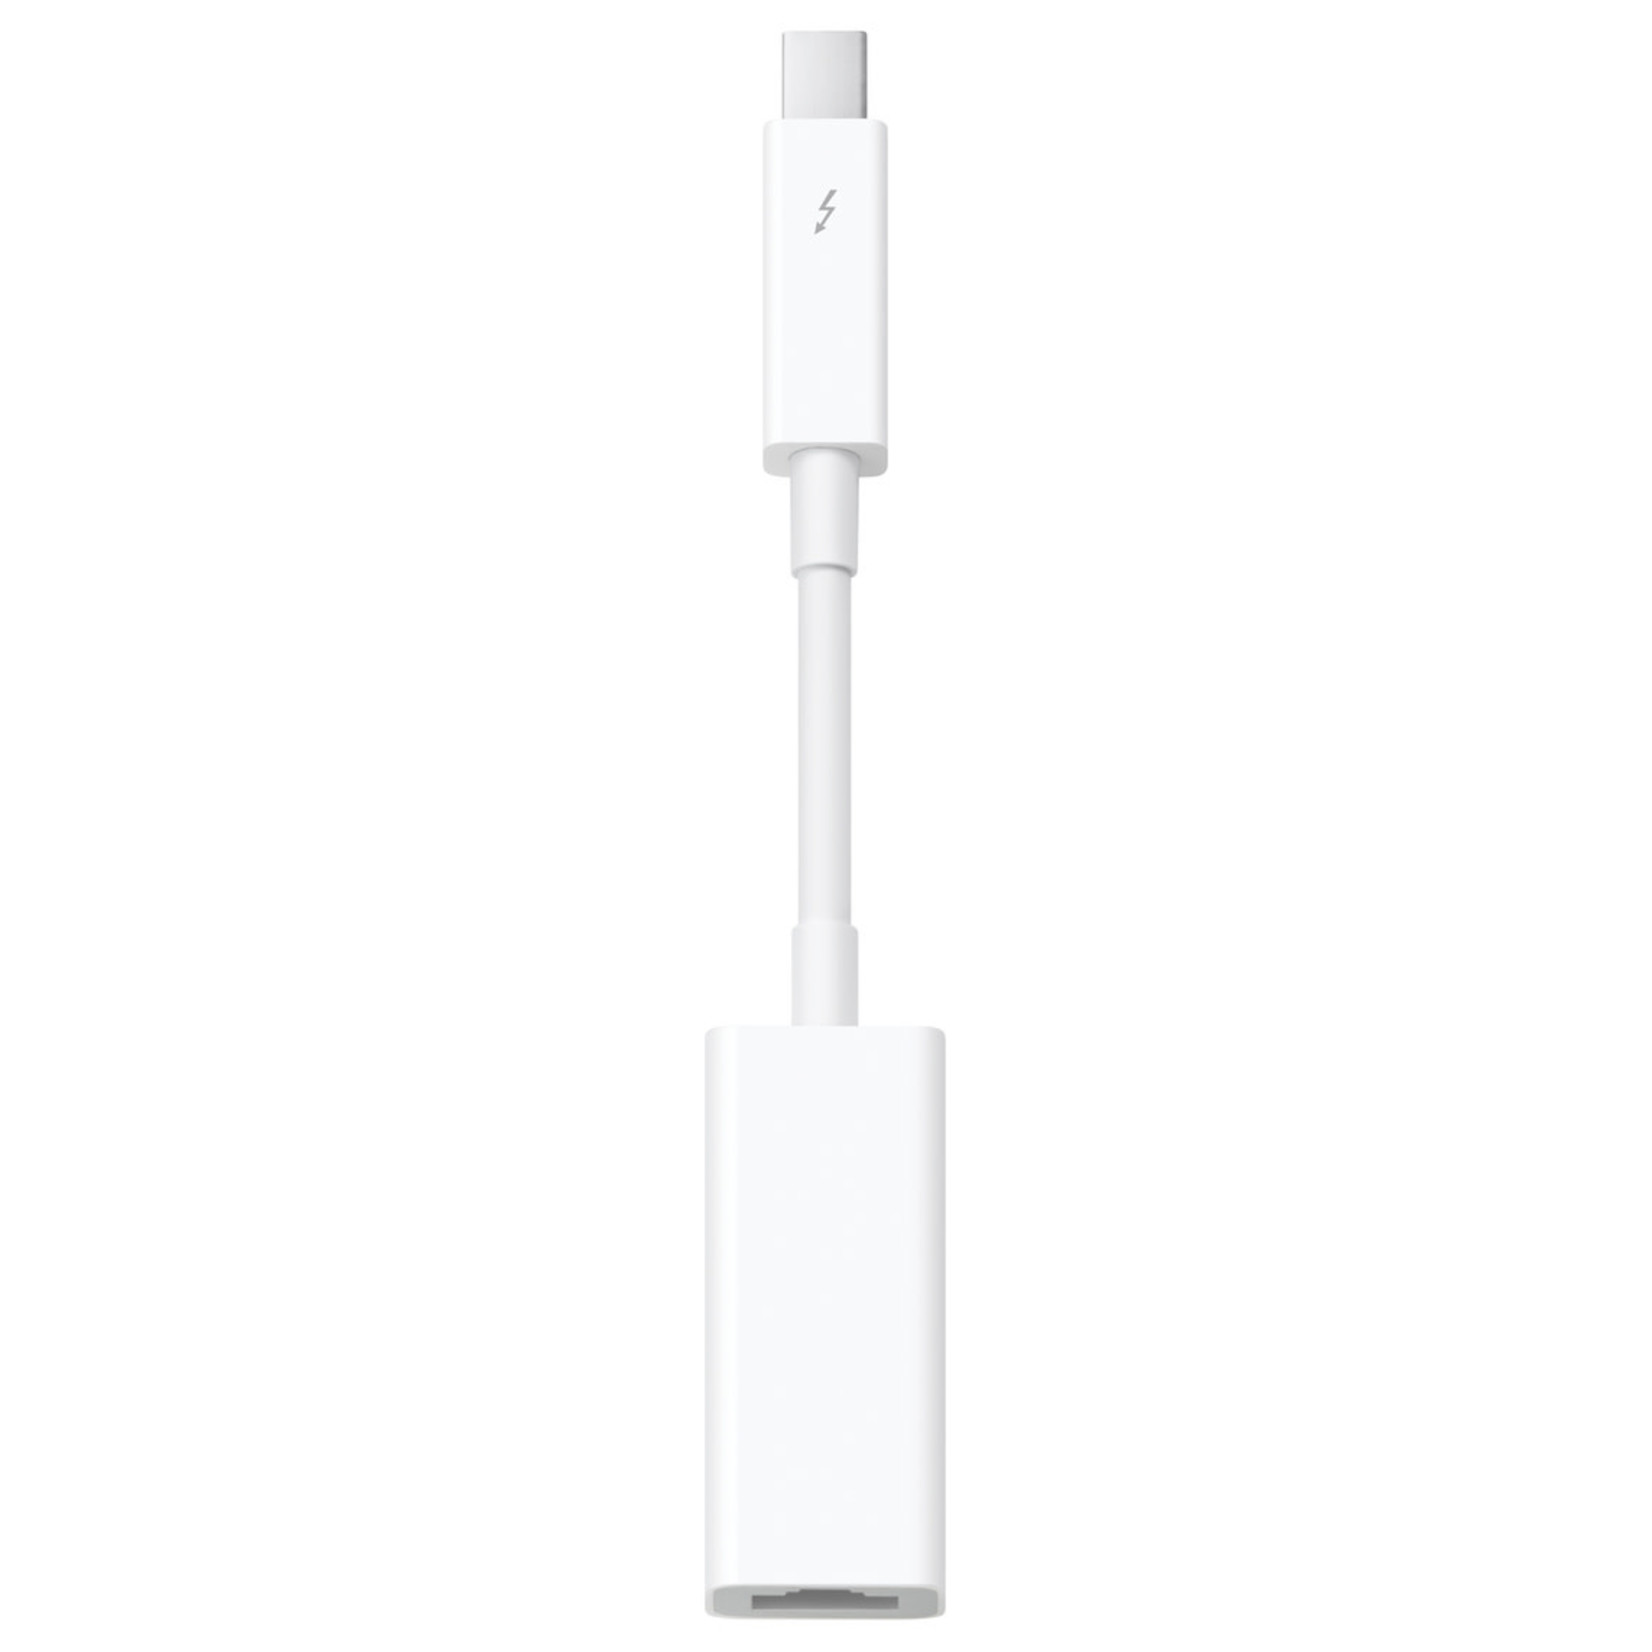 Apple Apple Thunderbolt to Gigabit Ethernet Adapter